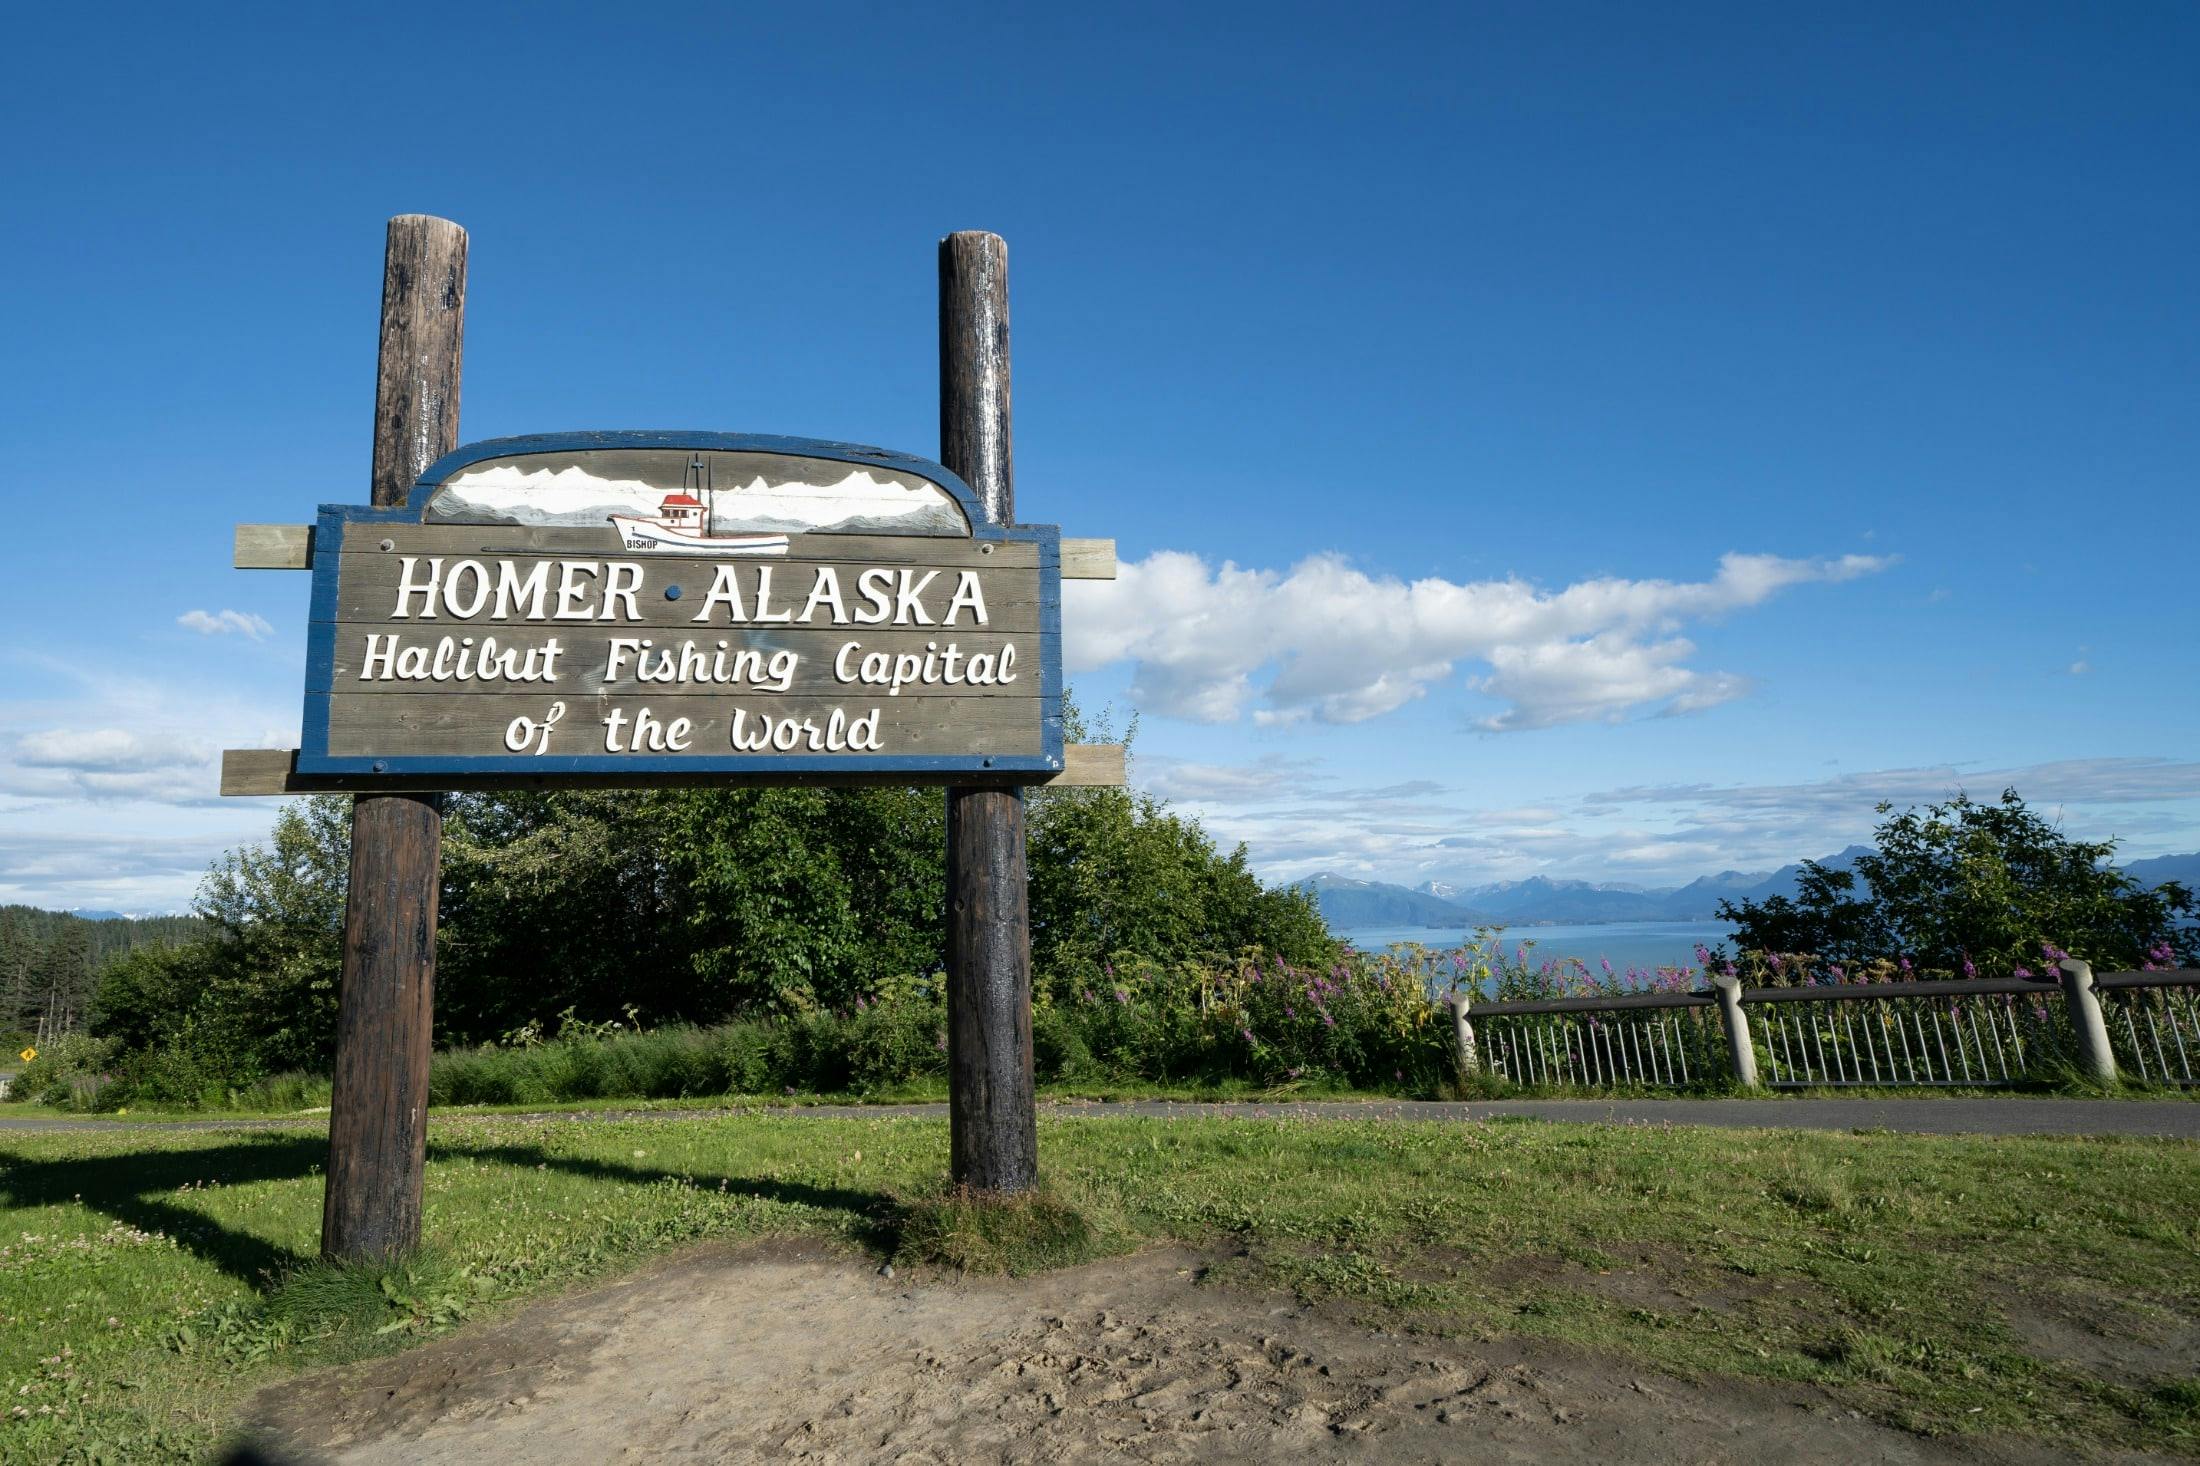 Large wooden sign for visiting Homer Alaska